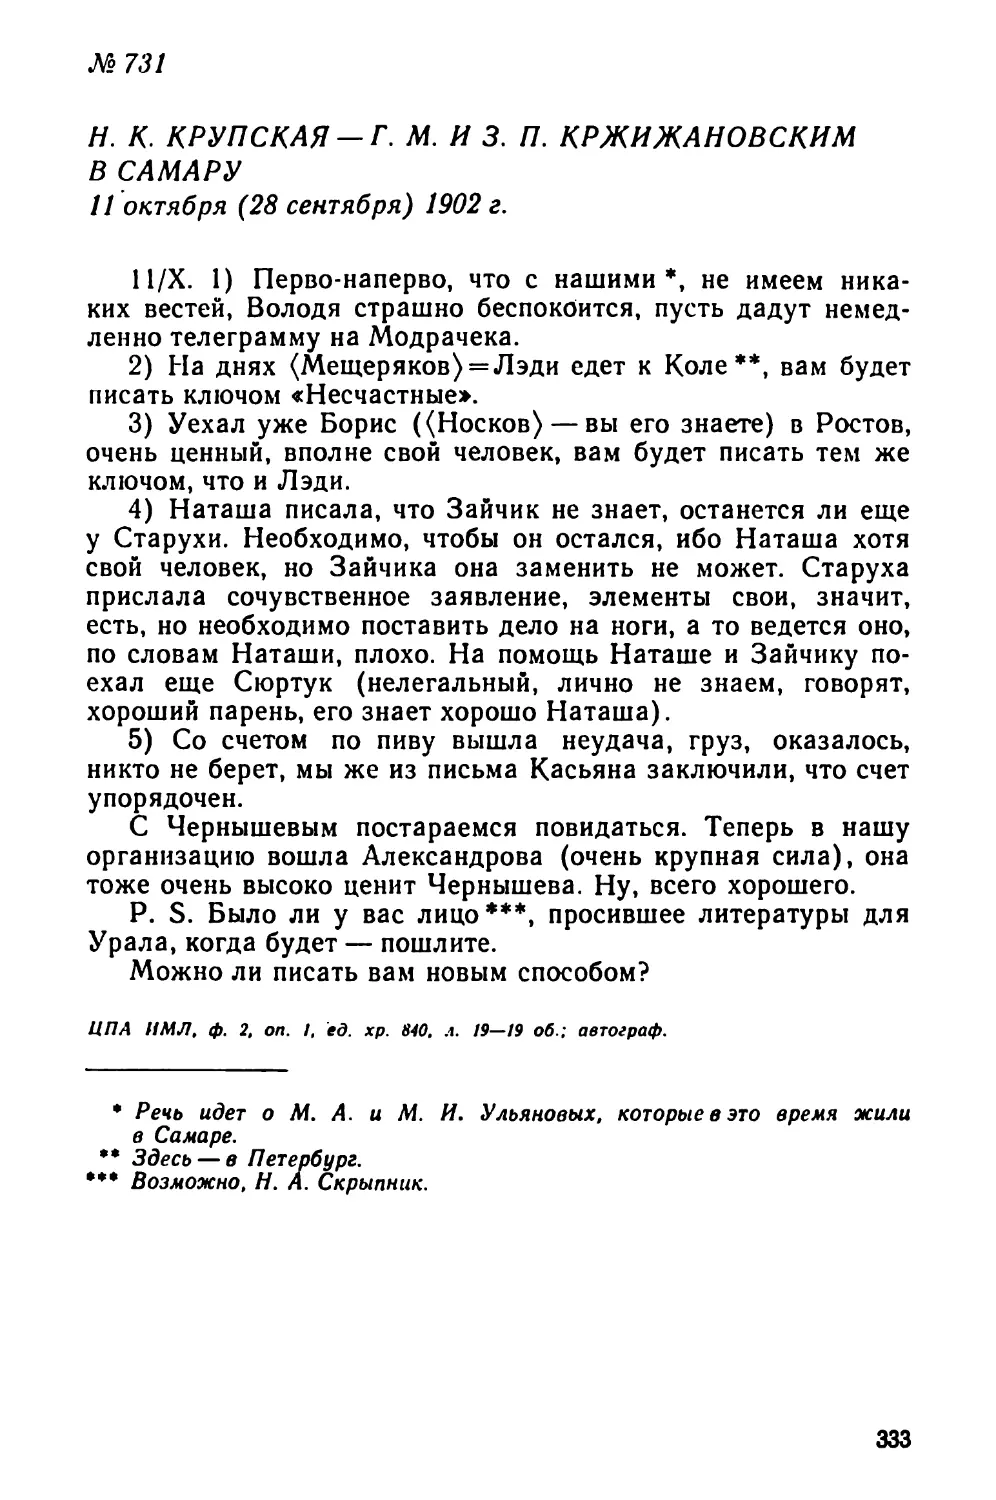 № 731 Н. К. Крупская — Г. М. и 3. П. Кржижановским в Самару. 11 октября